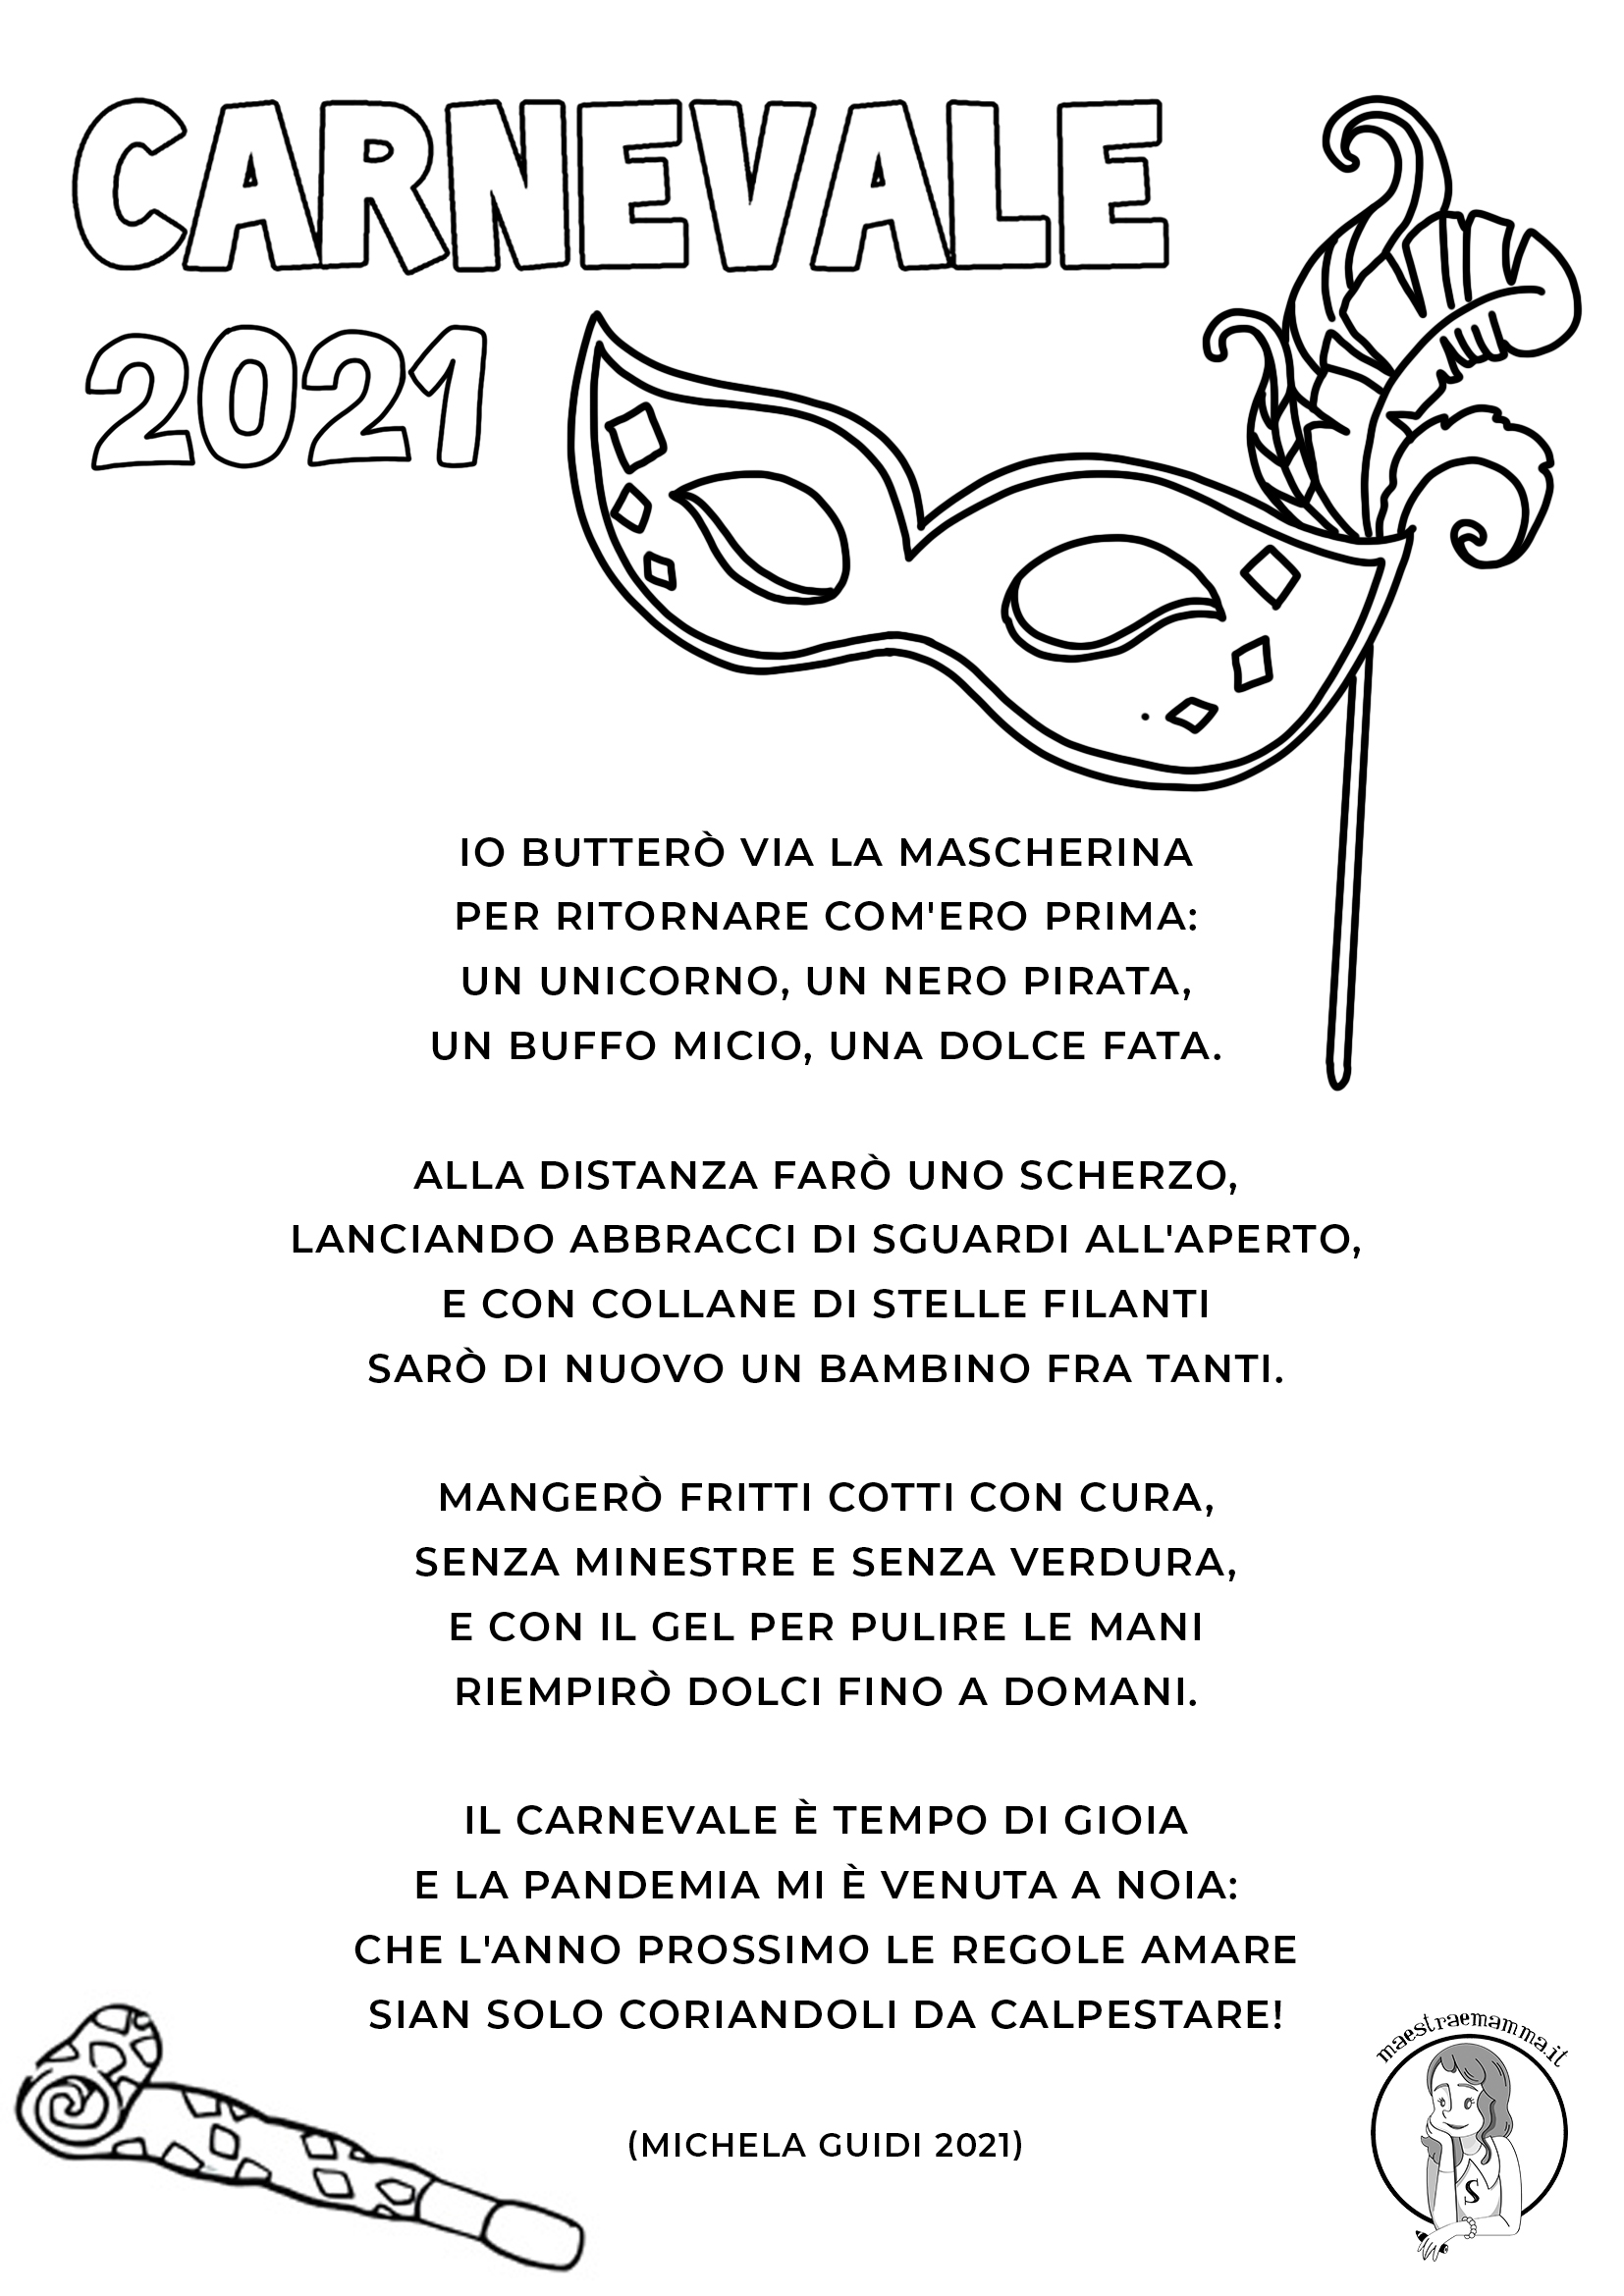 carnevale 2021 poesia di michela guidi